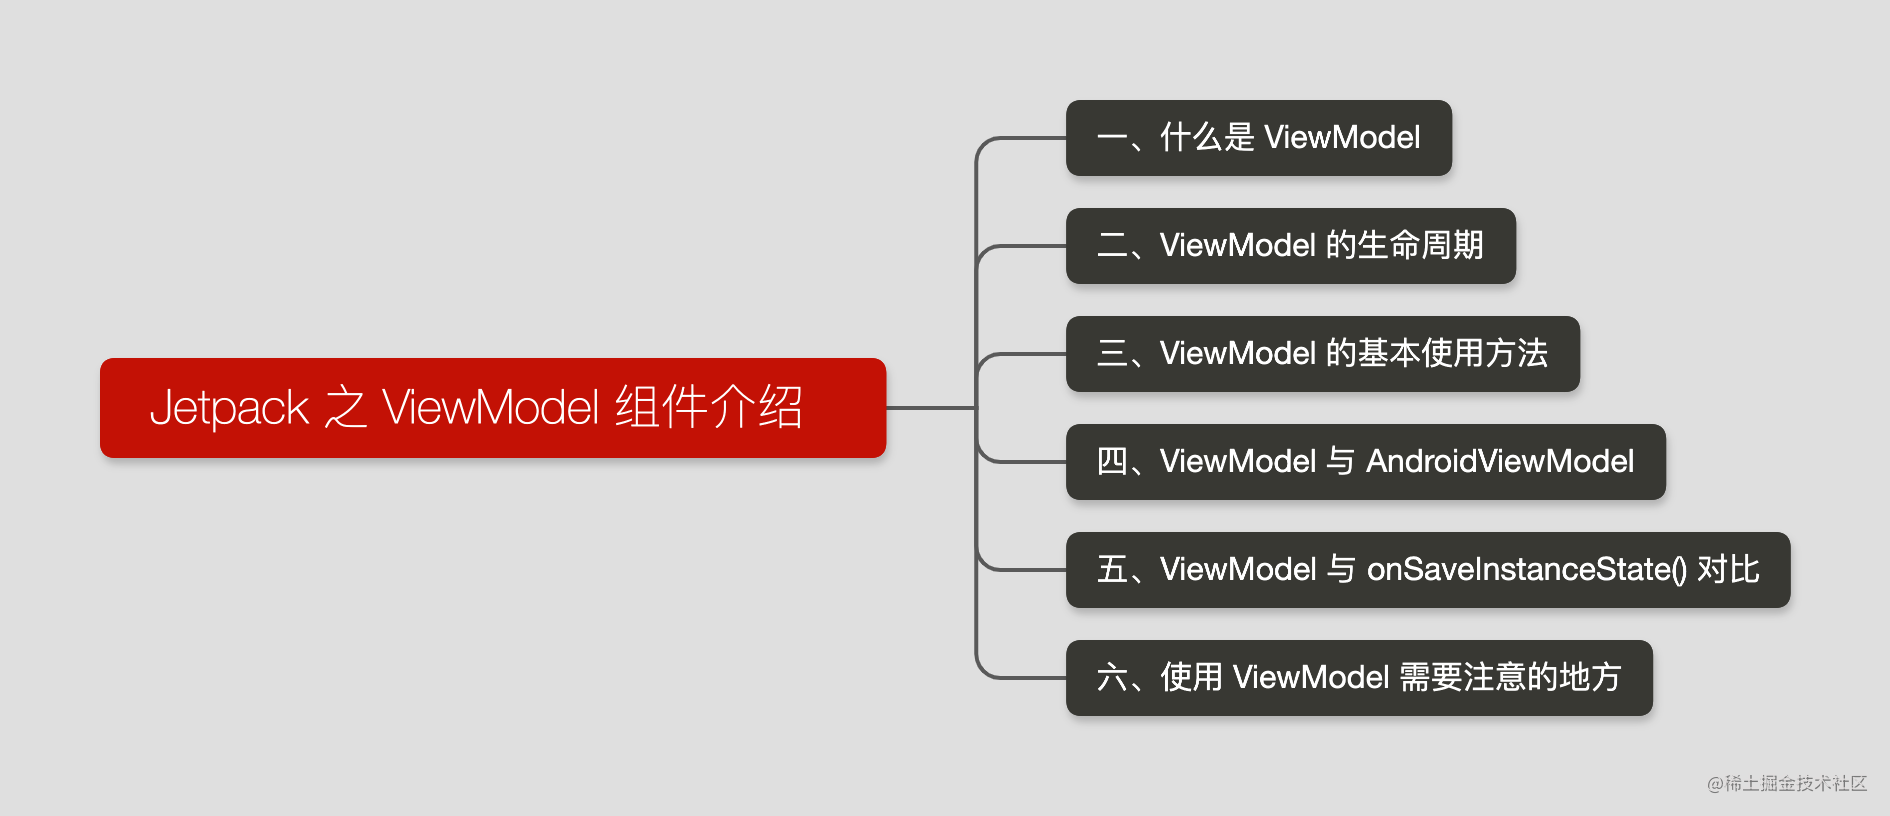 Jetpack 之 ViewModel 组件介绍